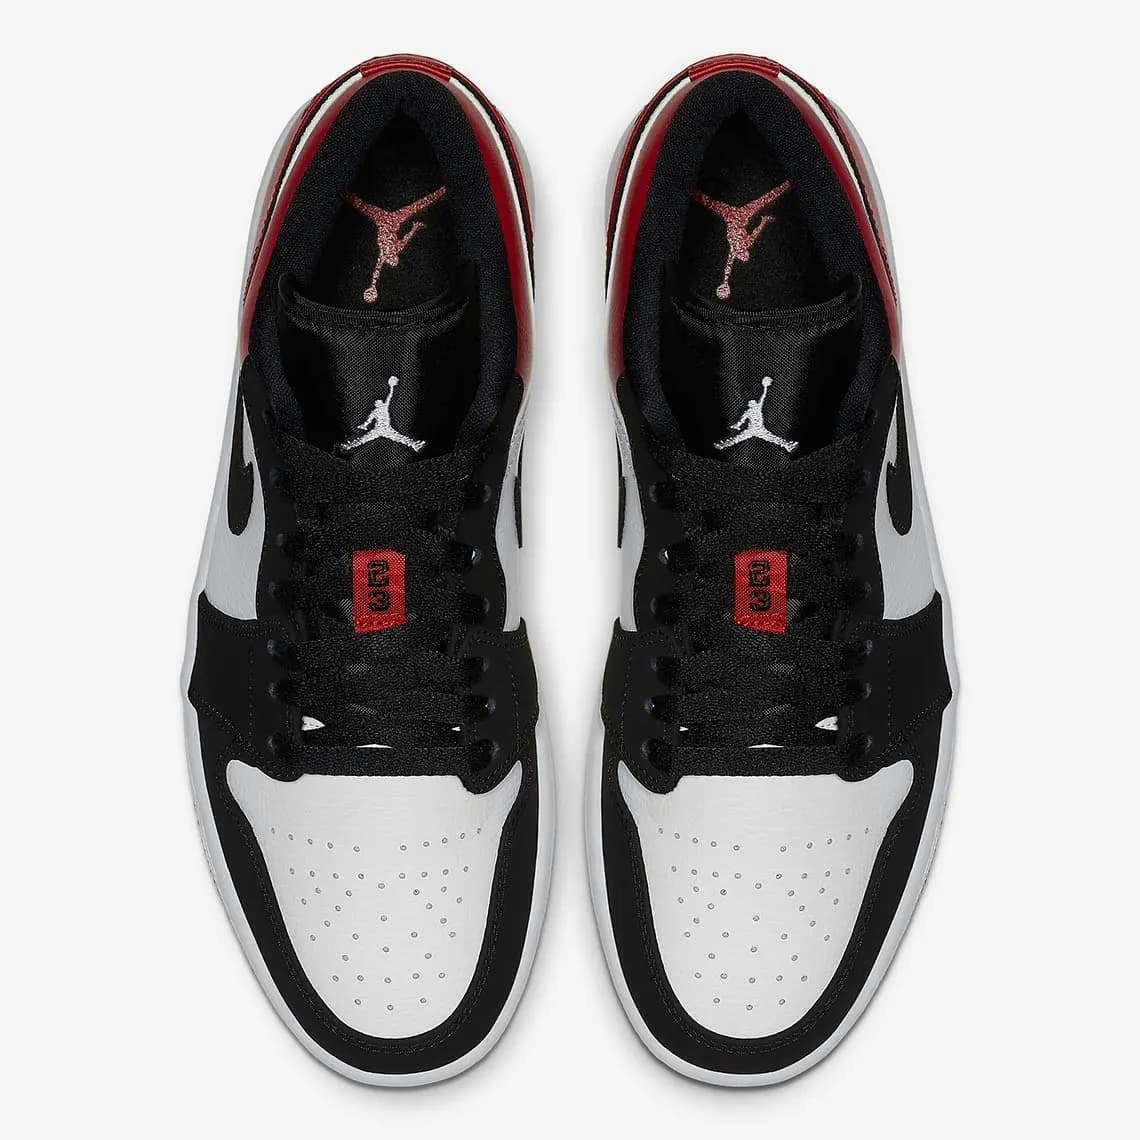 Air Jordan 1 Low OG "Black Toe" 